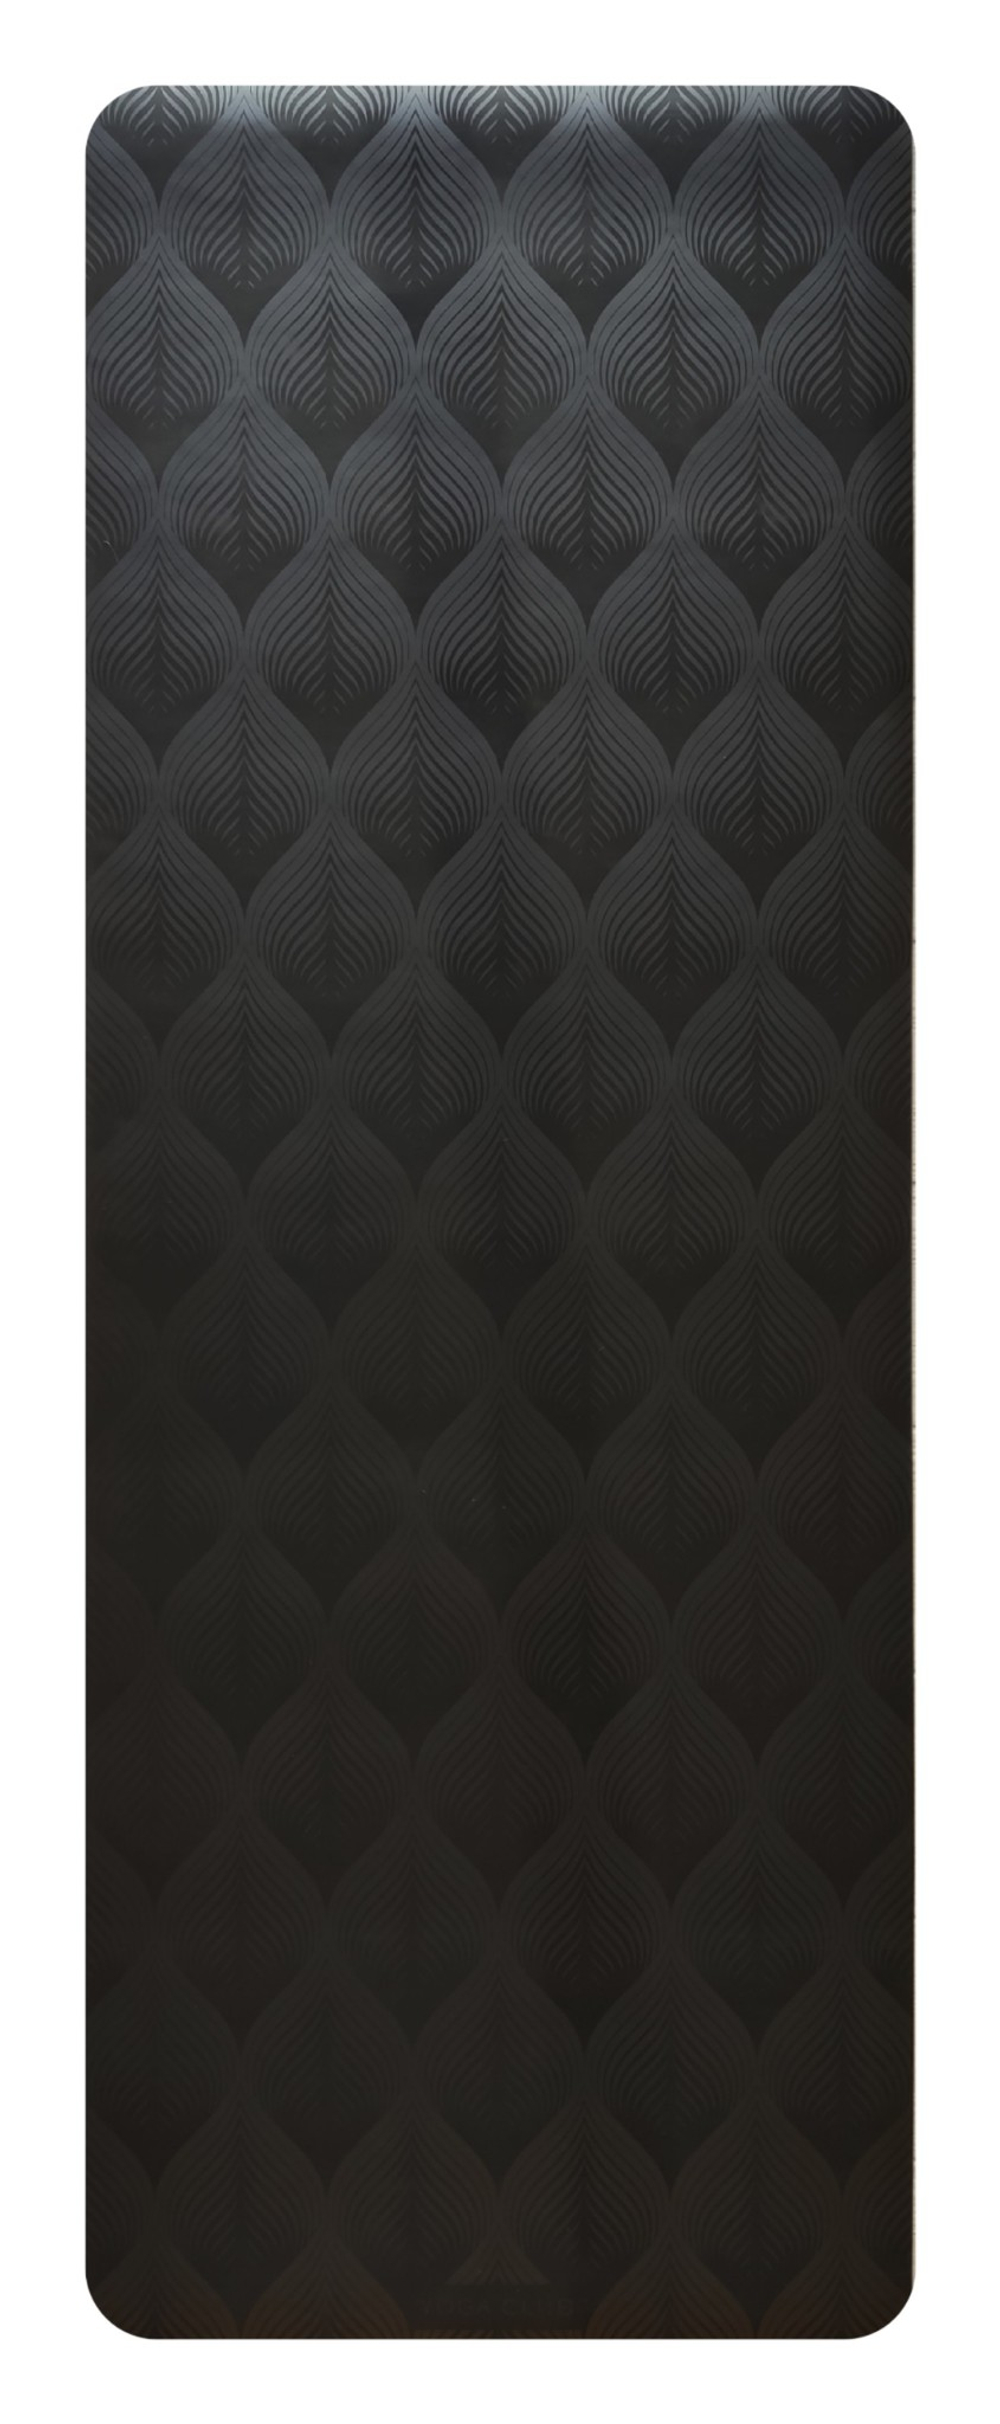 Каучуковый йога коврик Leaf Black 185*68*0,45 см